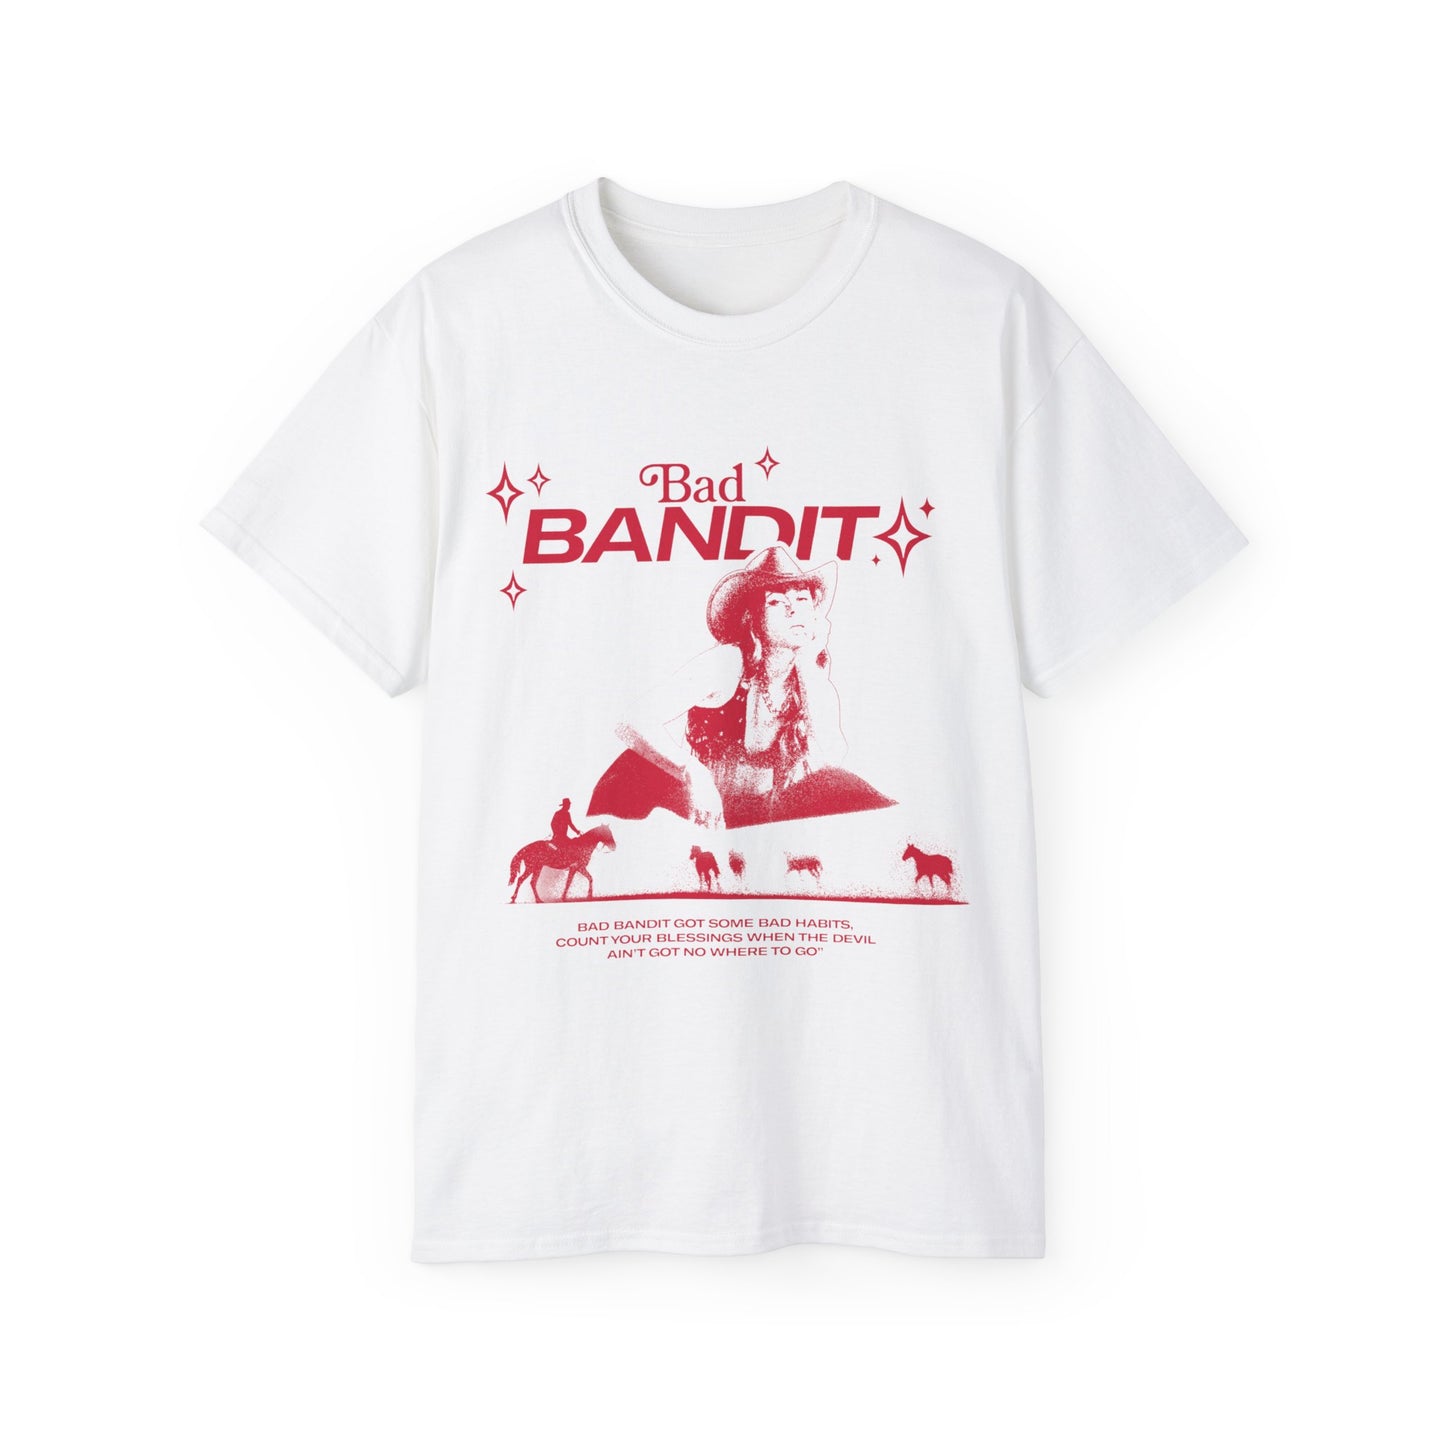 Bad Bandit Tshirt - Red Print